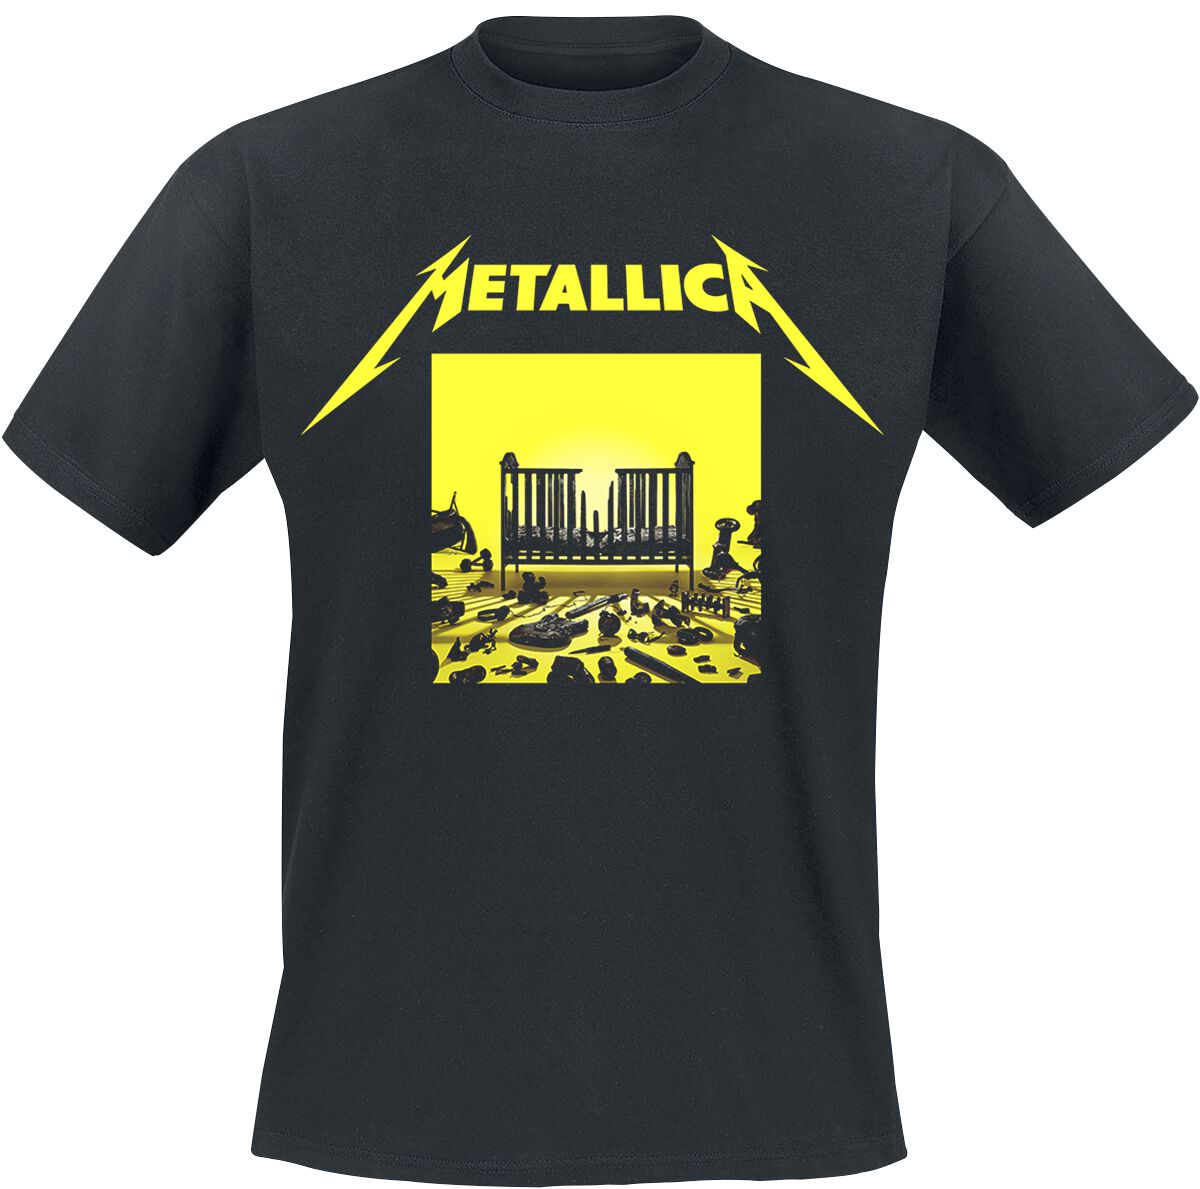 Metallica T-Shirt - M72 Squared Cover - S bis 5XL - für Männer - Größe S - schwarz  - Lizenziertes Merchandise!